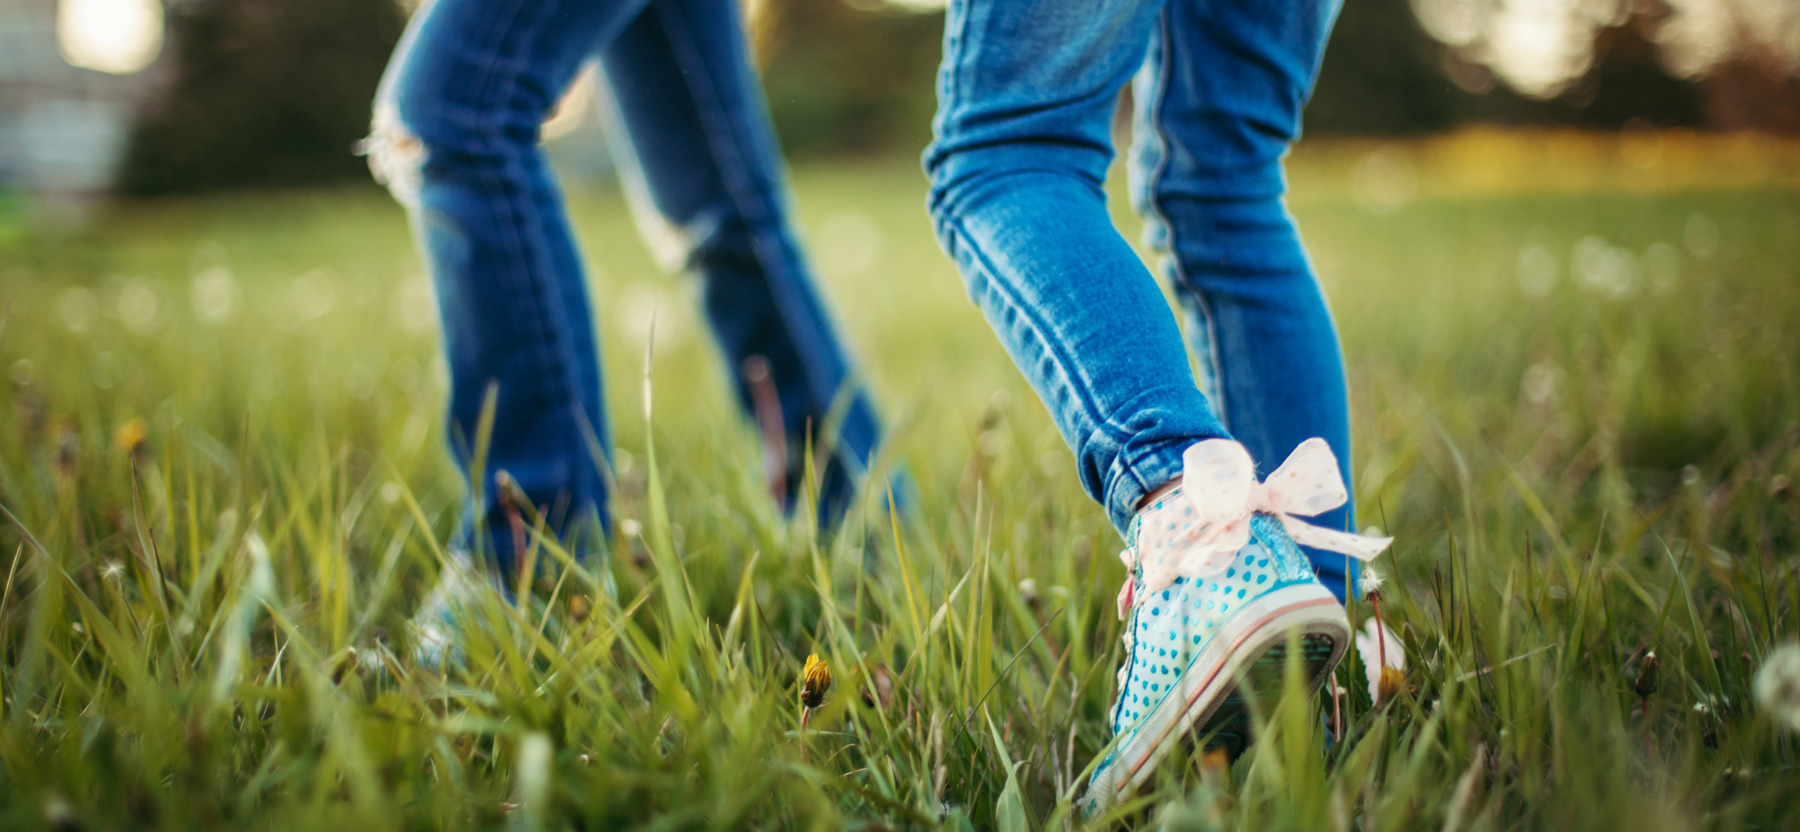 pieds d'enfants marchant dans l'herbe